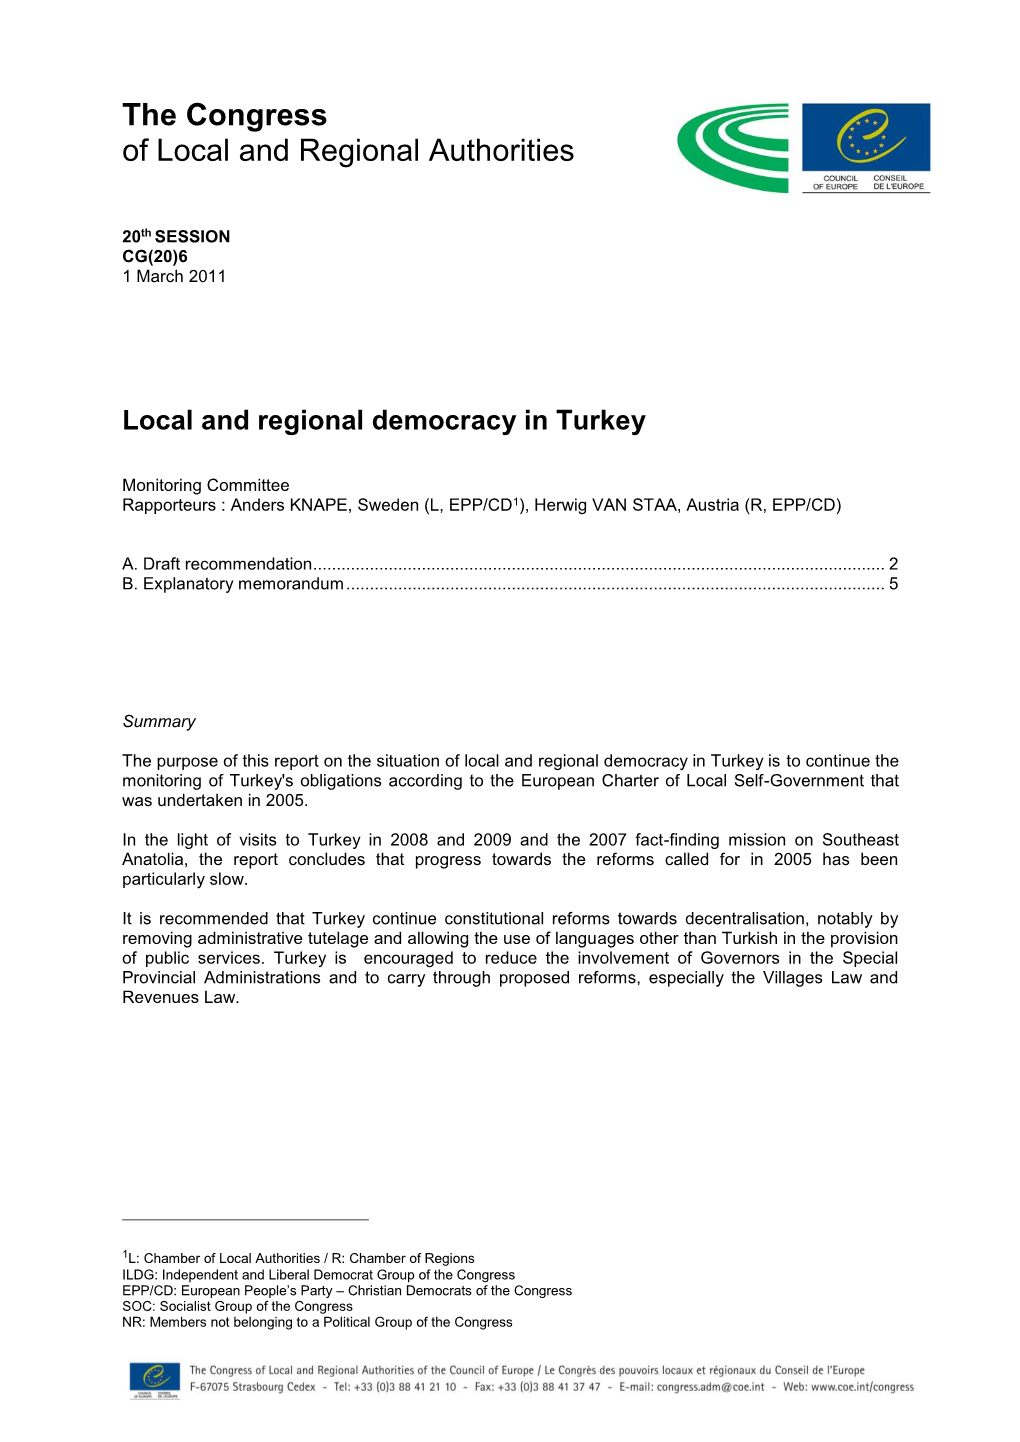 Local and Regional Democracy in Turkey